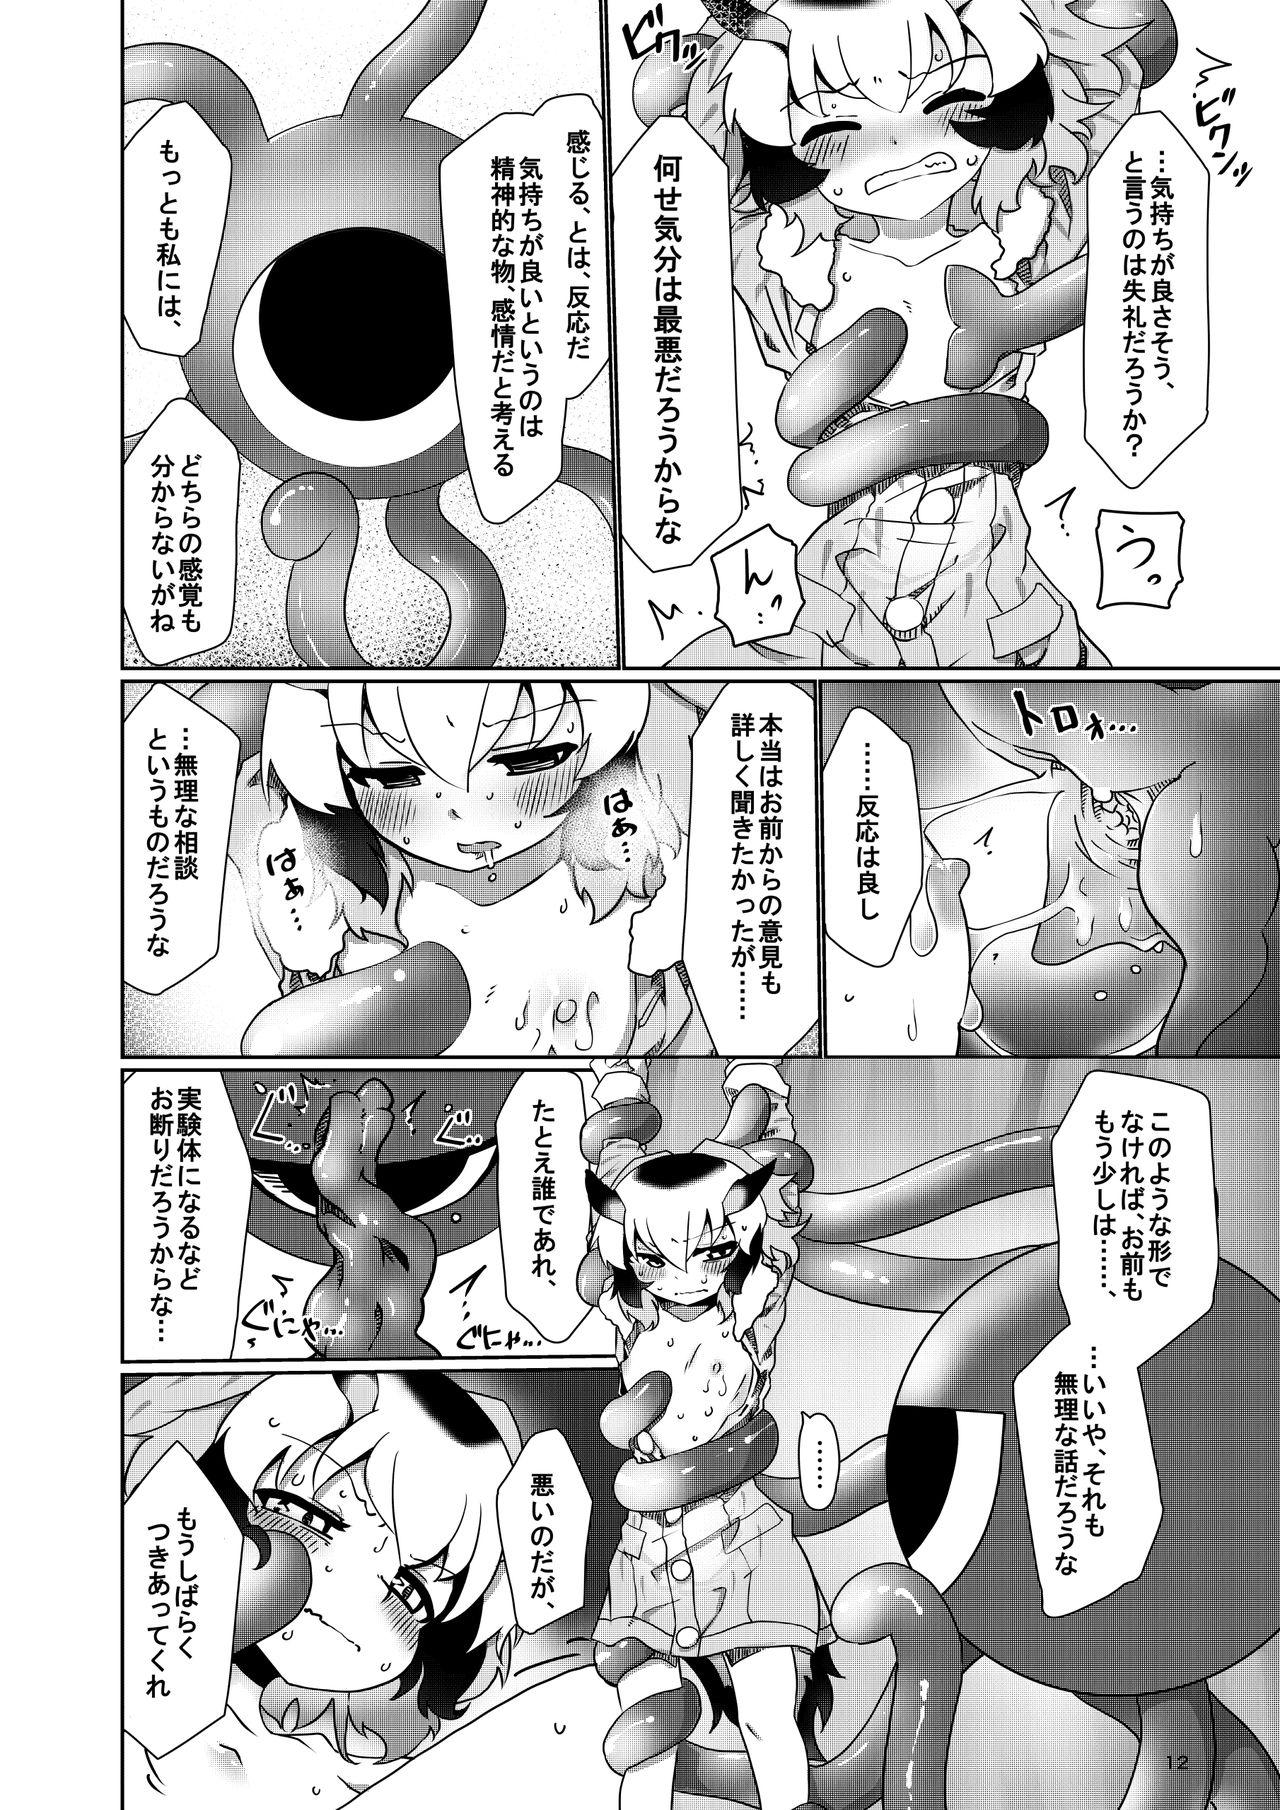 Latina APPLE WOLF 0007 Kono wa Ecchi 4 - Kemono friends Creamy - Page 12